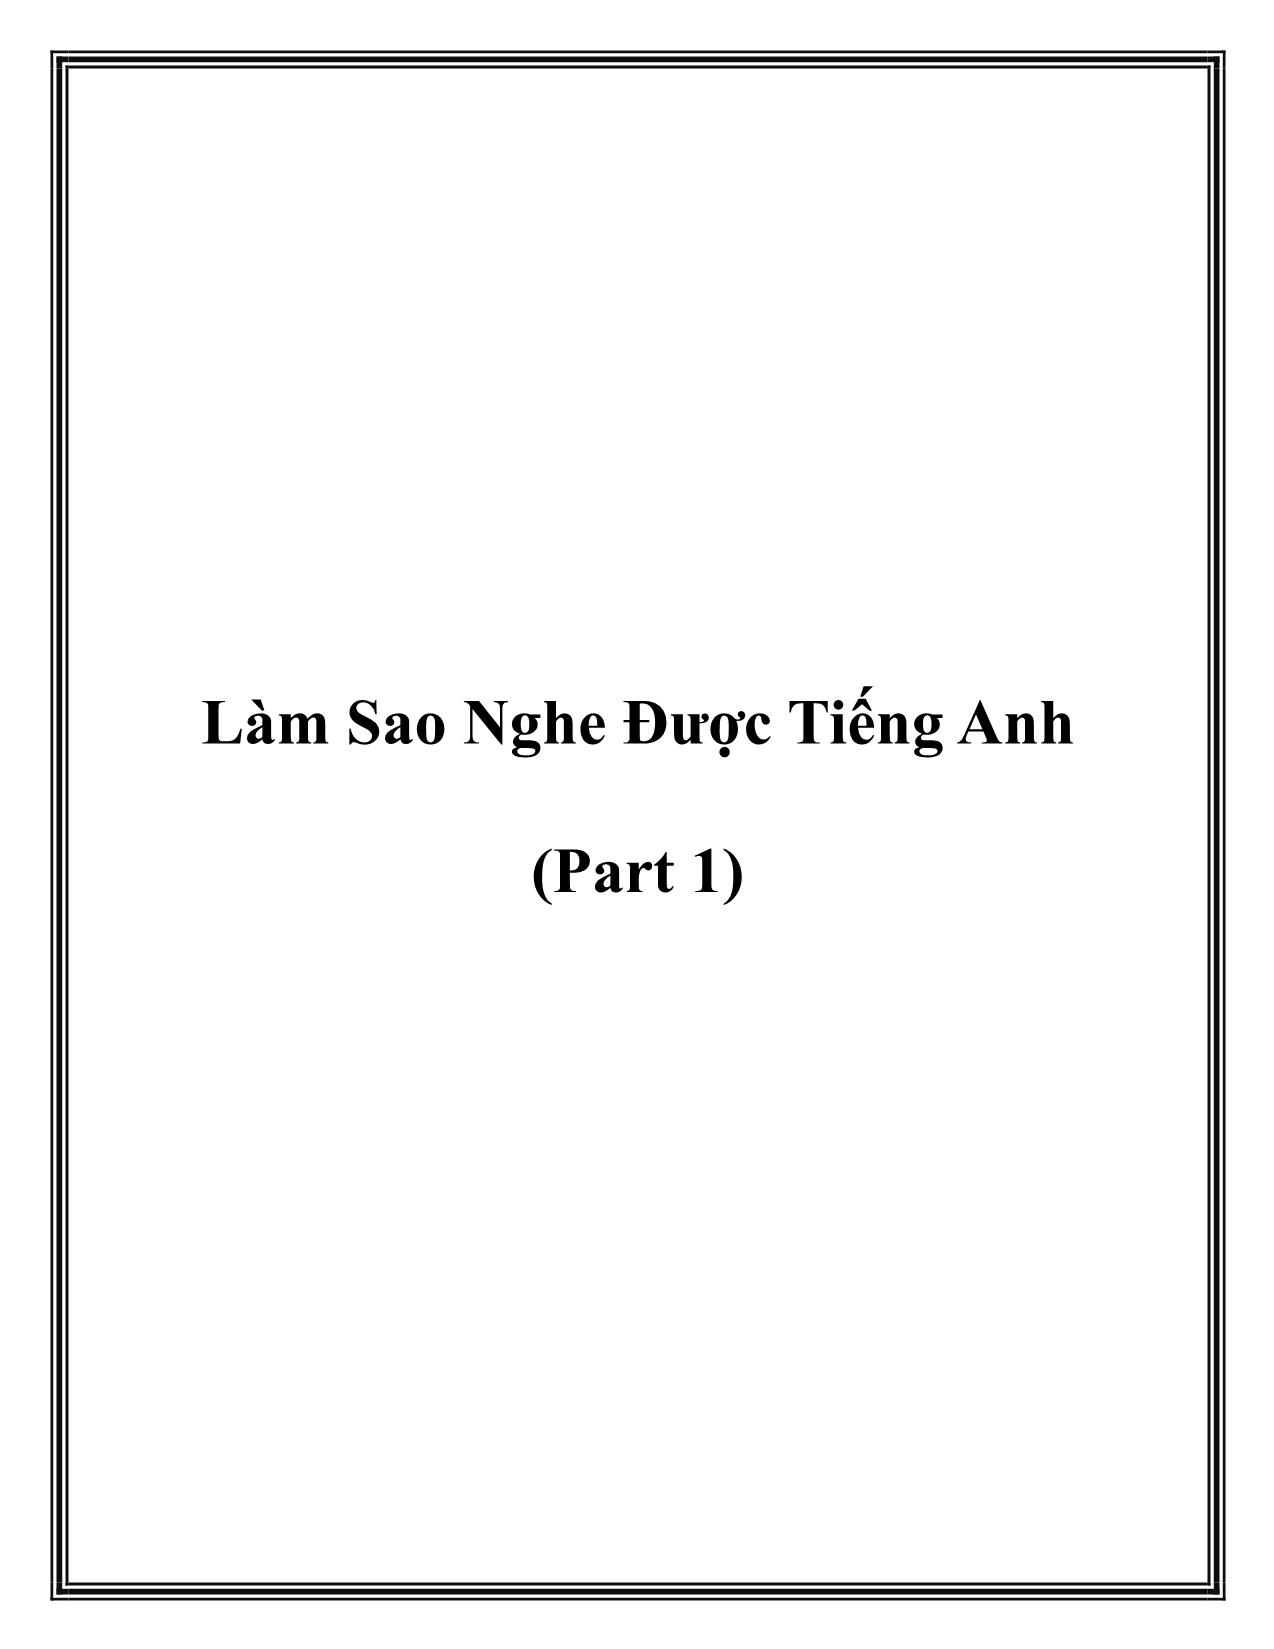 Lam-Sao-nghe-duoc-tieng-anh-part-1._SID12_PID983652 trang 1